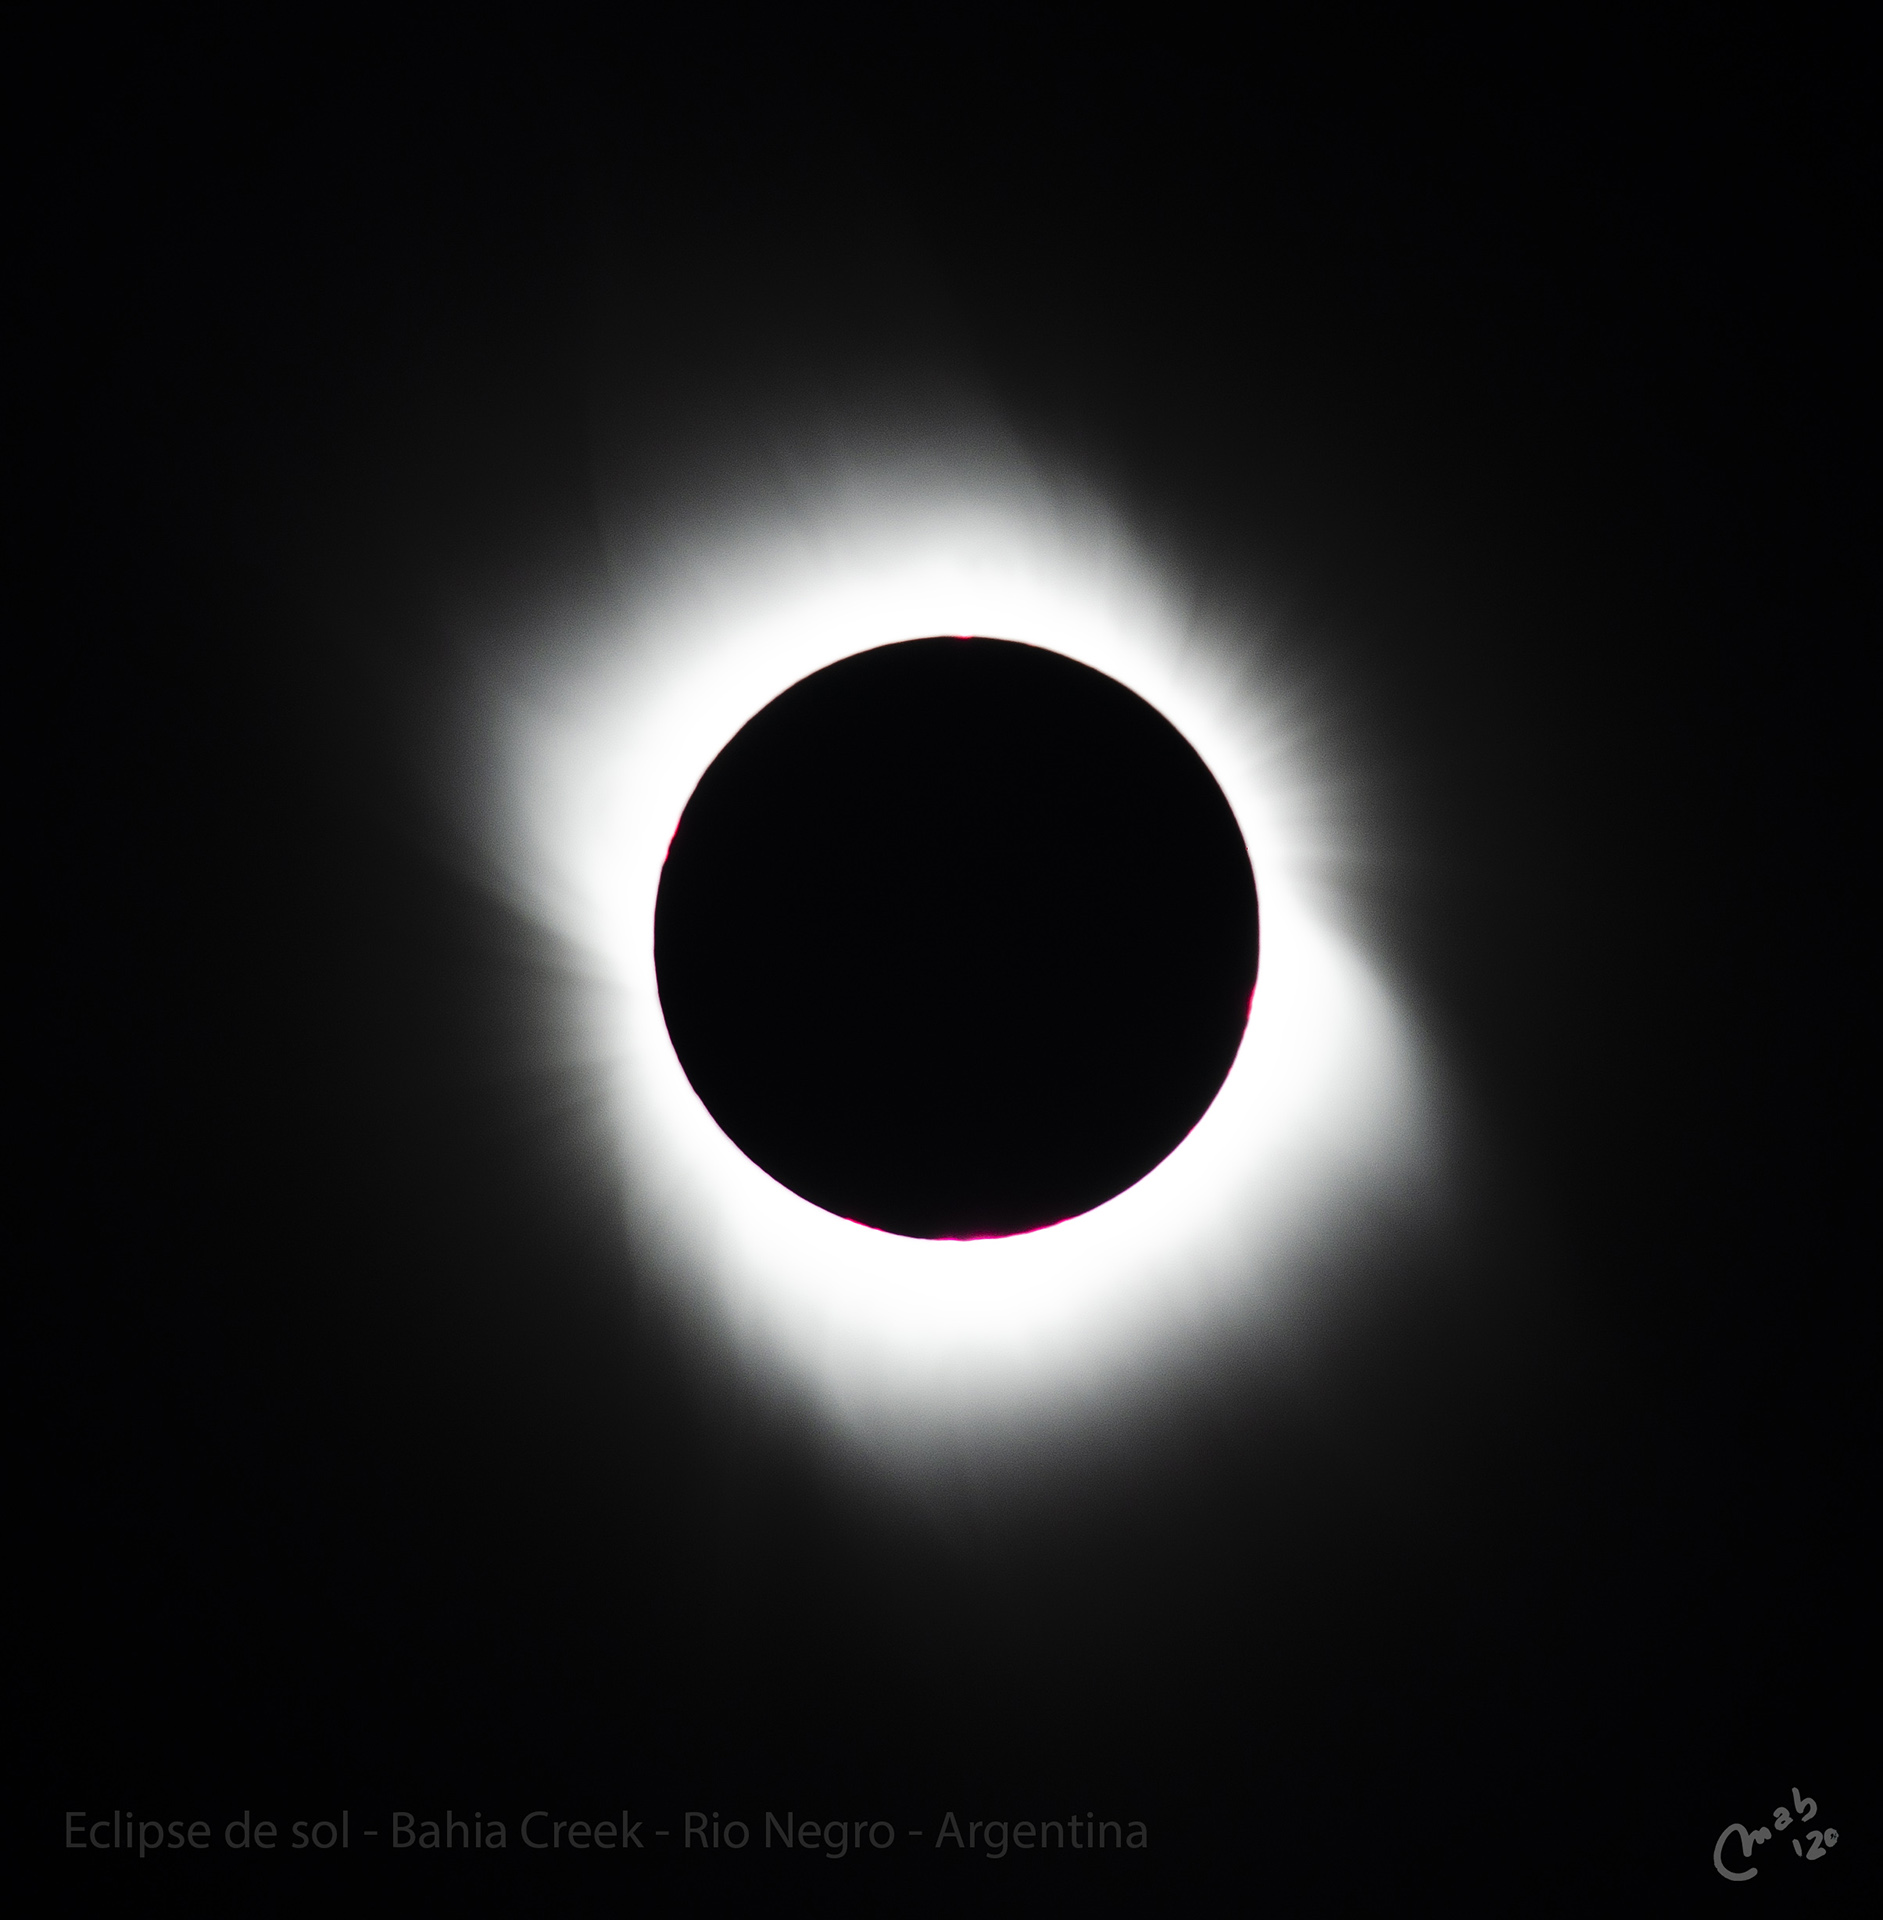 eclipse-de-sol-baile-de-corona-solar